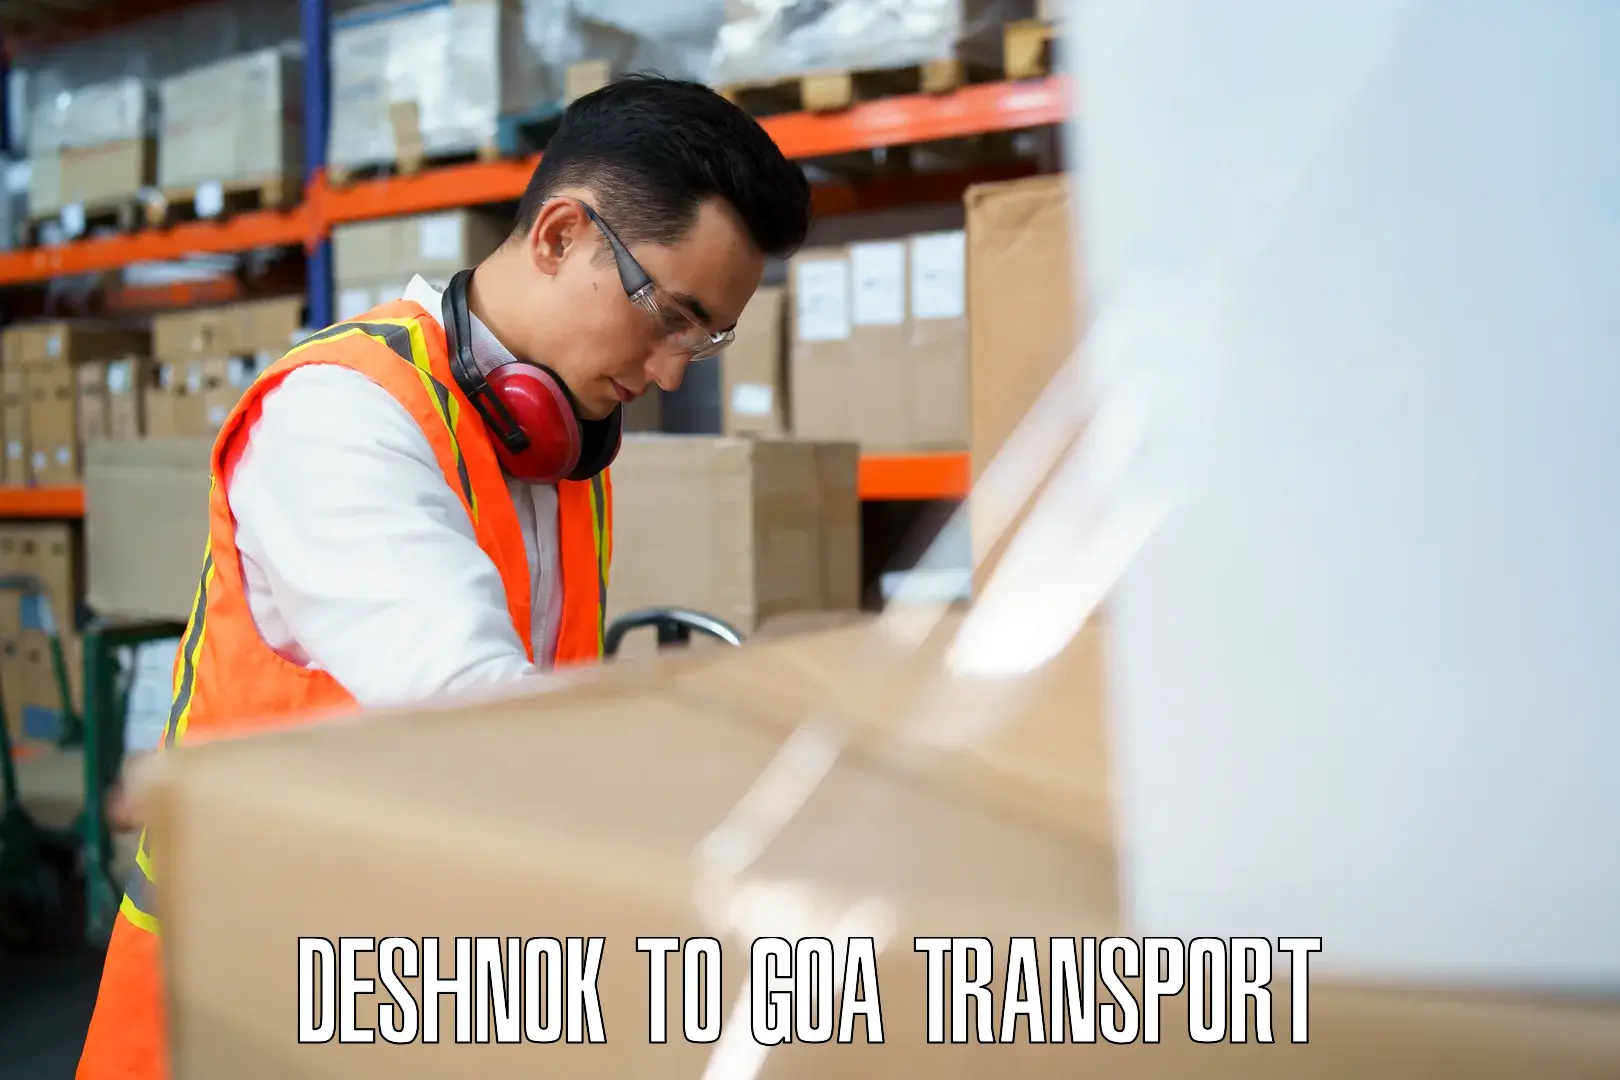 Commercial transport service Deshnok to Goa